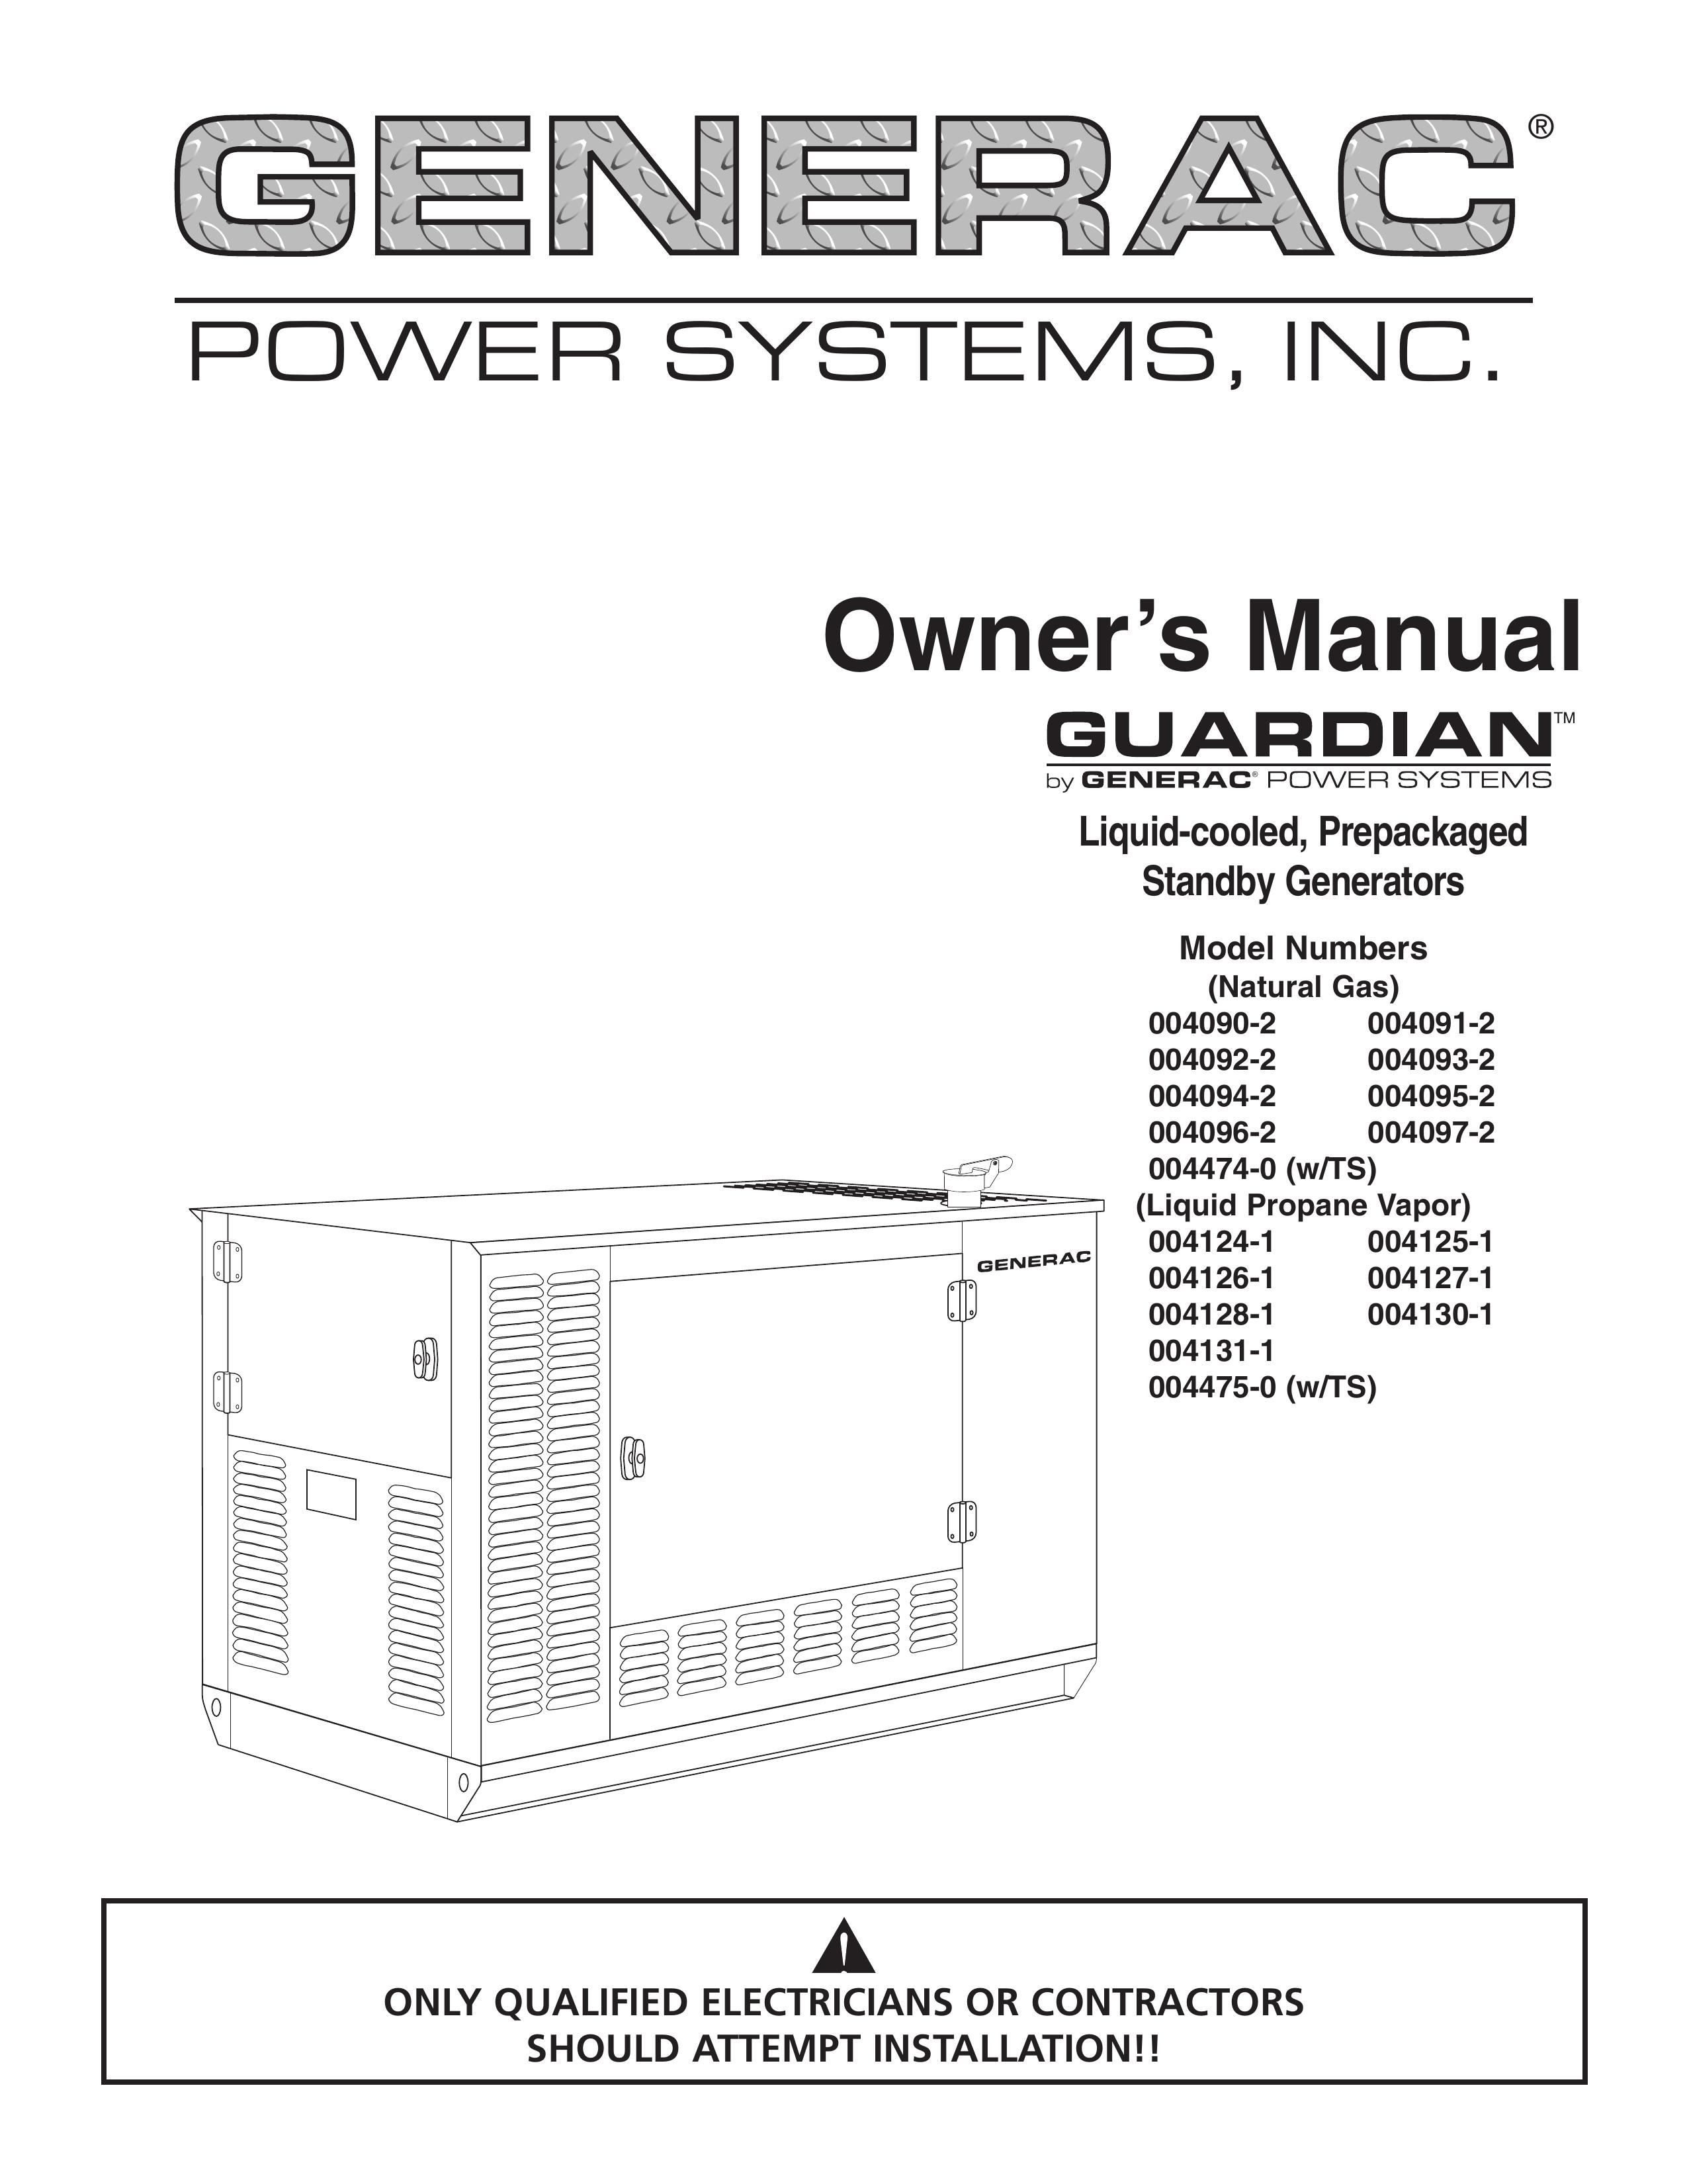 Generac 004124-1, 004125-1, 004126-1, 004127-1, 004128-1, 004130-1, 004131-1, 004475-0 Portable Generator User Manual